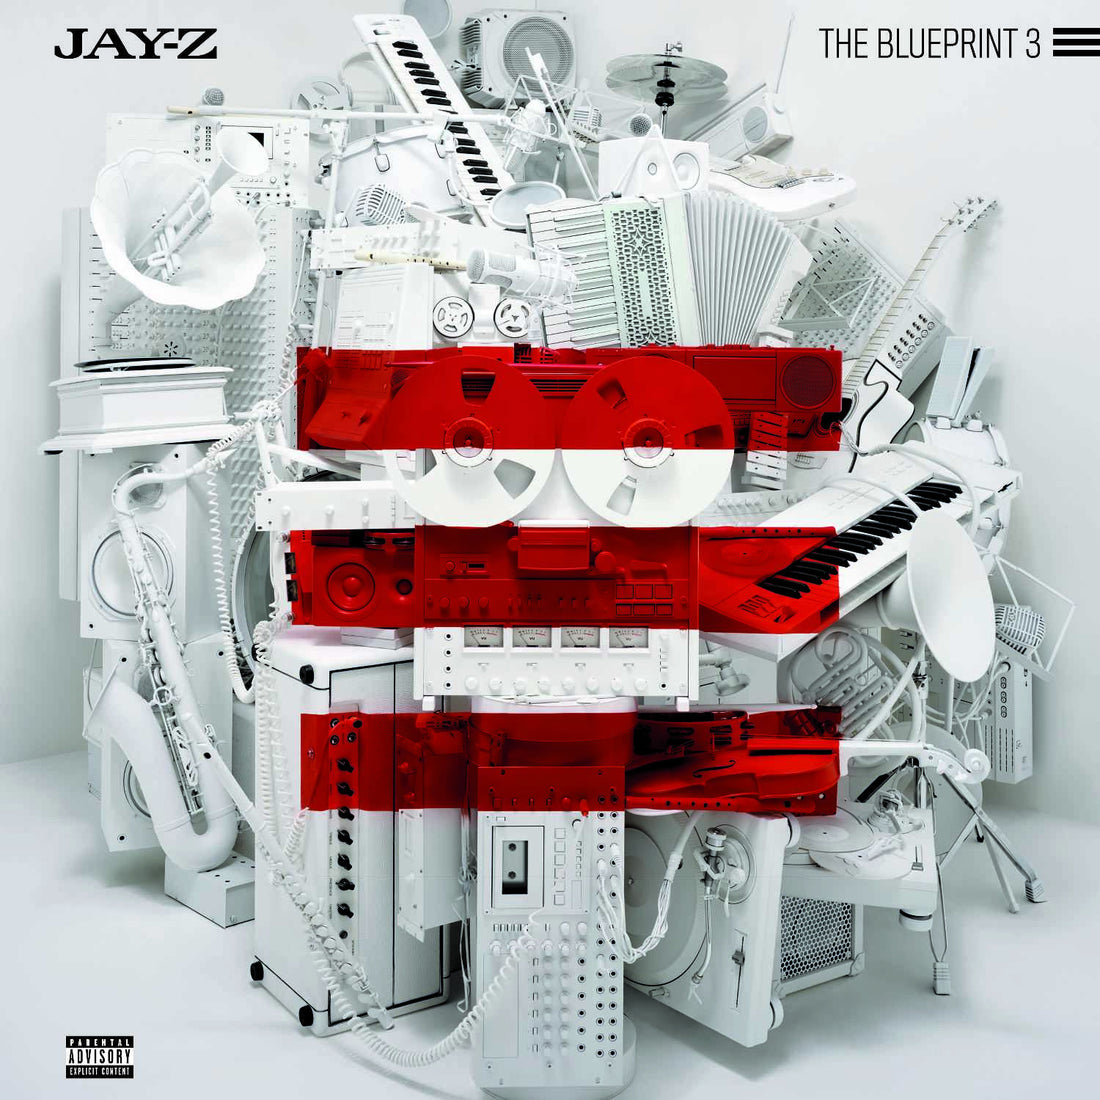 Jay Z "The Blueprint 3" 2xLP Vinyl